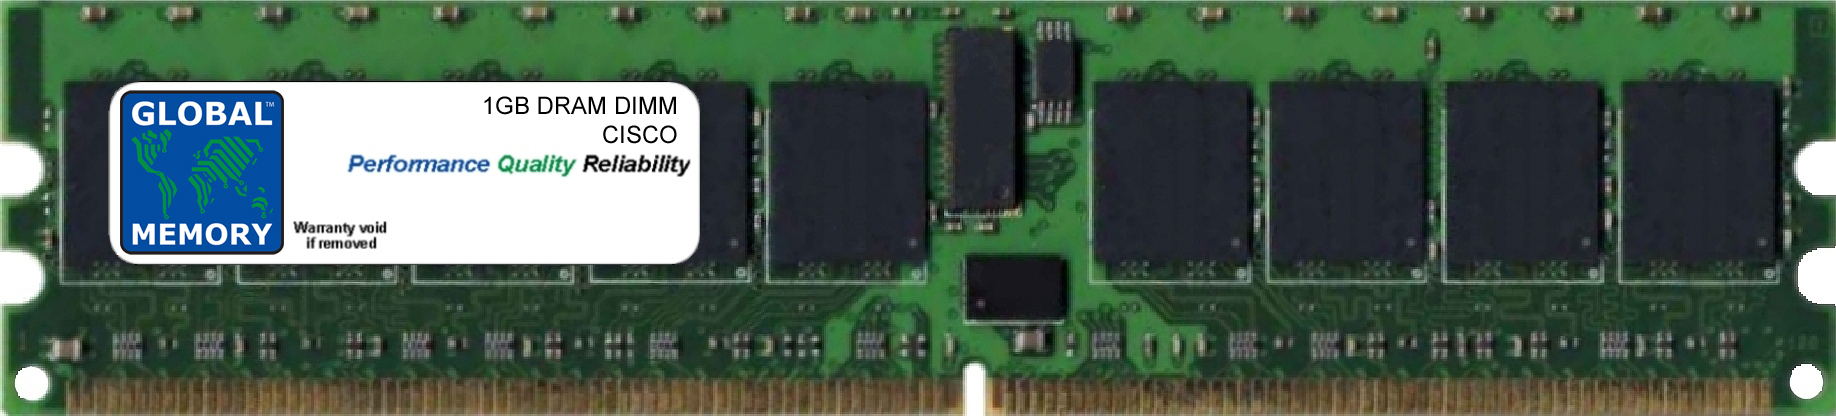 1GB DRAM DIMM MEMORY RAM FOR CISCO MEDIA CONVERGENCE SERVER MCS 7835-H1 (MEM-7835-H1-1GB)